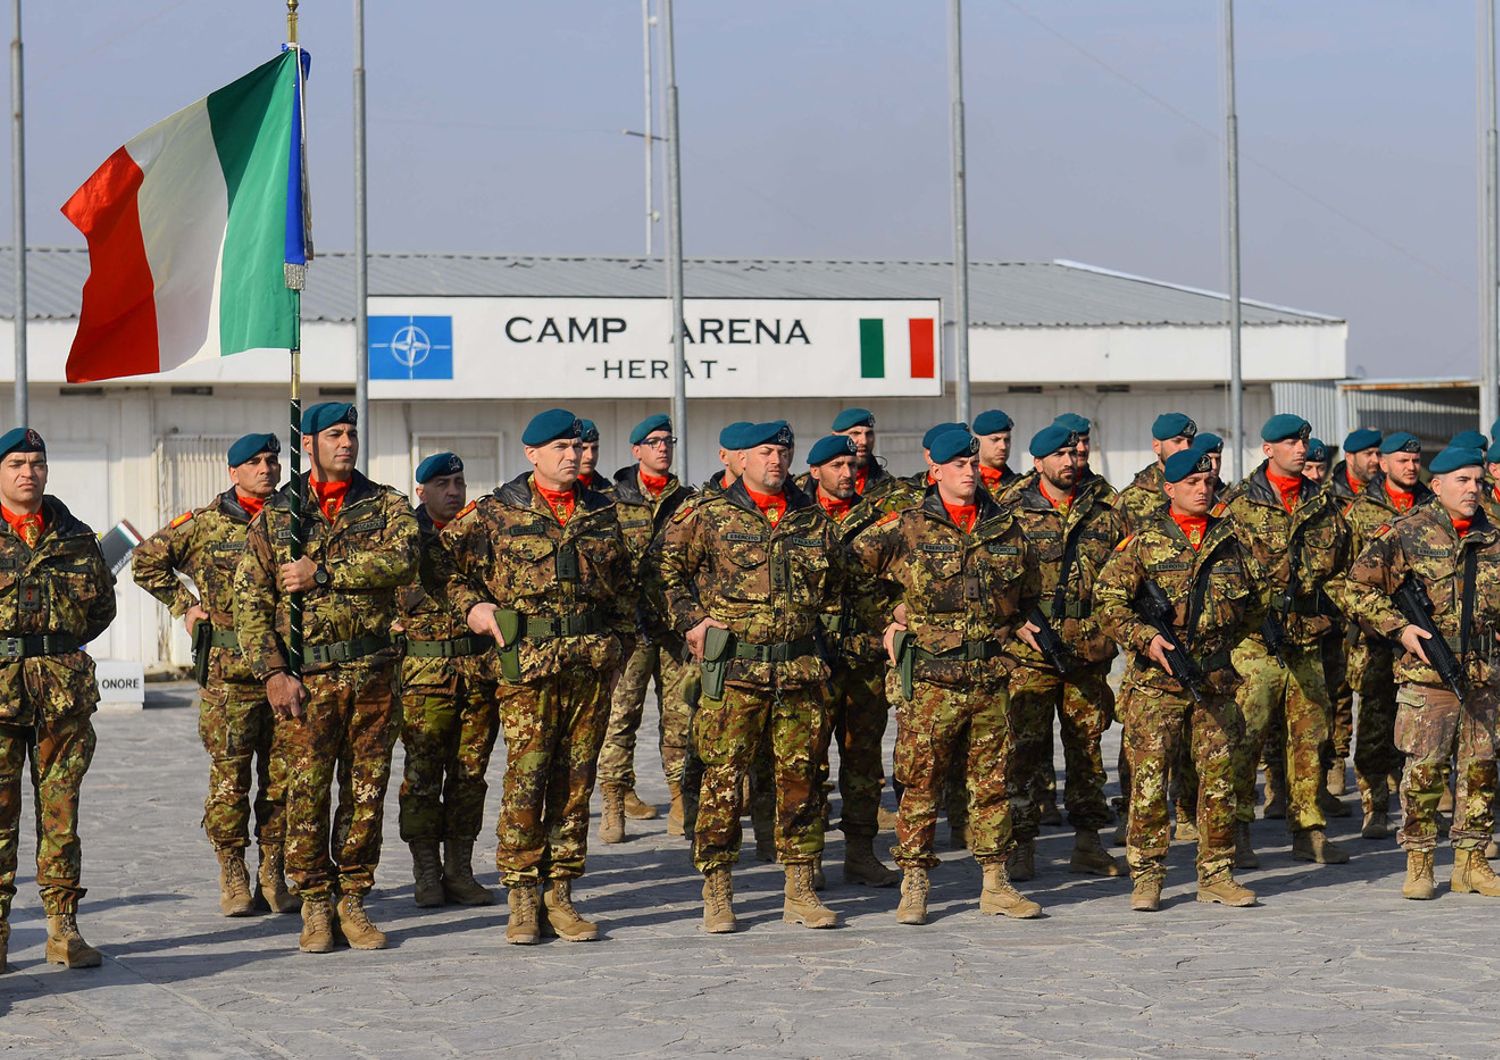 La base italiana Camp Arena di Herat